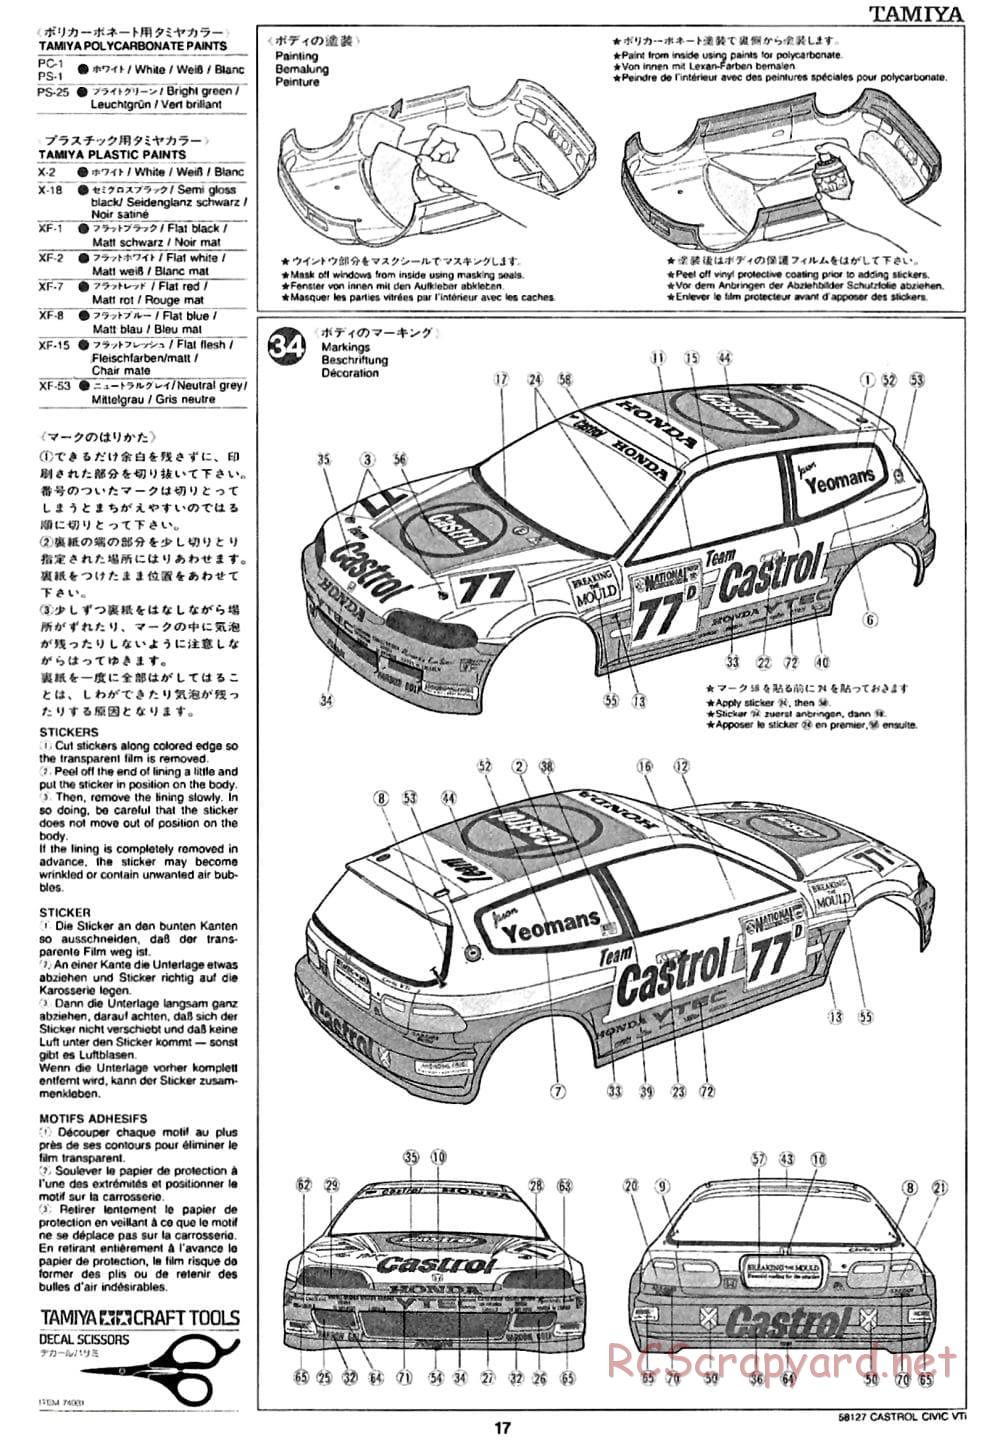 Tamiya - Castrol Honda Civic VTi - FF-01 Chassis - Manual - Page 17